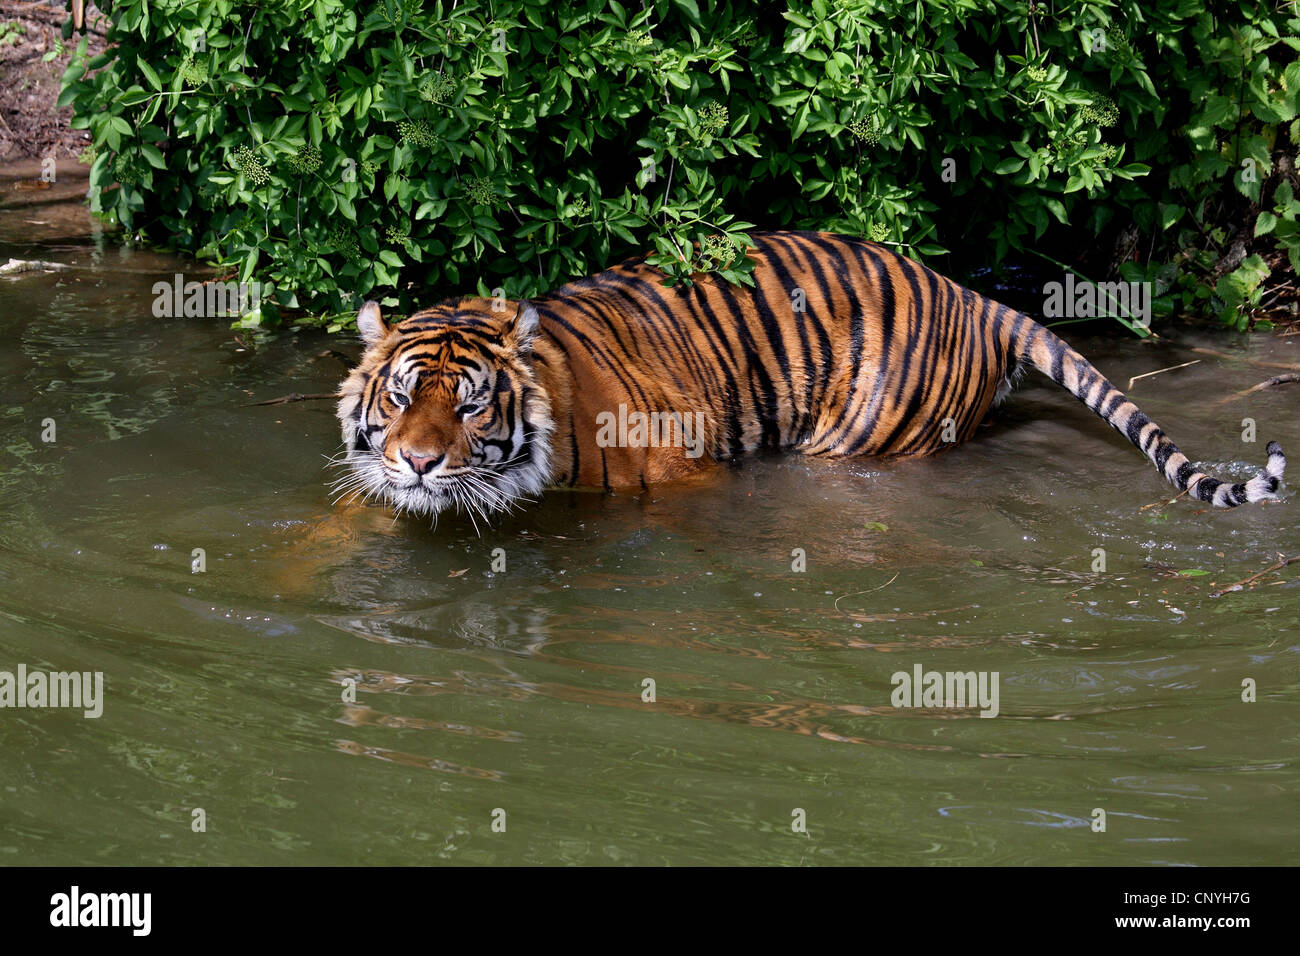 Sumatran tiger (Panthera tigris sumatrae), in water Stock Photo